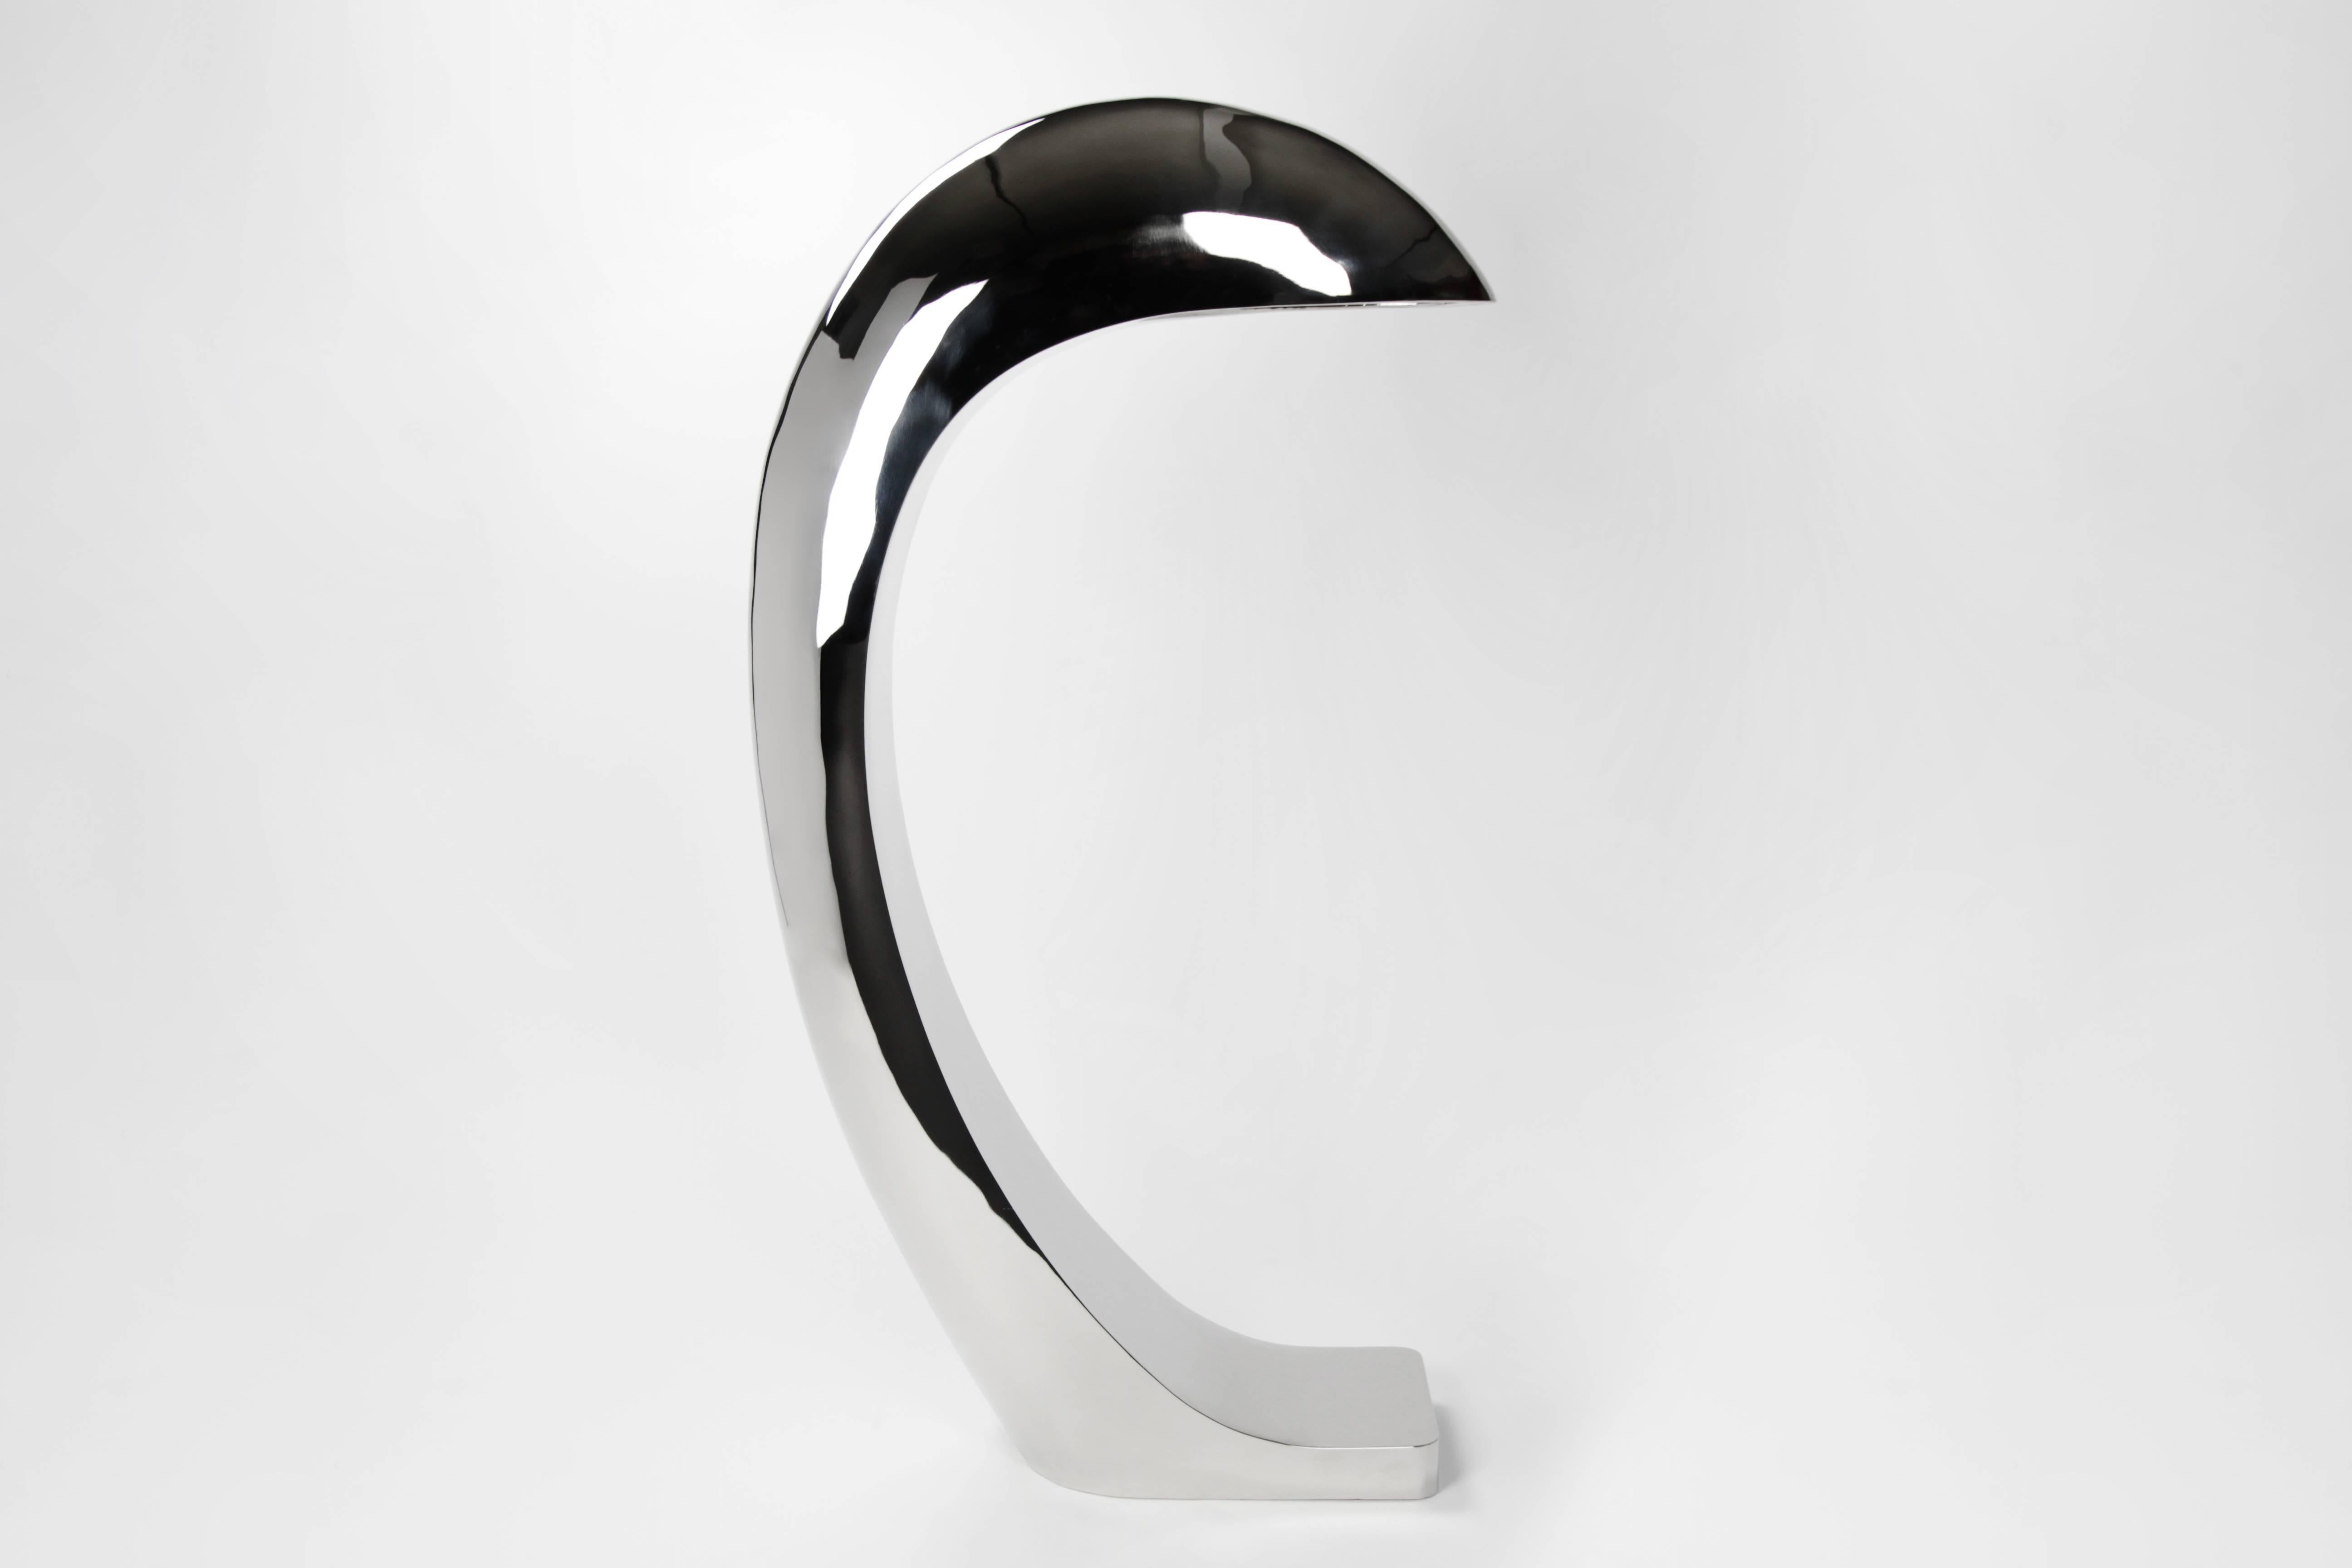 Le lampadaire Nautilus est le deuxième ajout à la série Nautilus Study. 
Cette lampe sculpturale de 44 pouces de haut est fabriquée en laiton forgé à la main, puis nickelé et poli miroir. 
La lumière se reflète dans de nombreuses directions